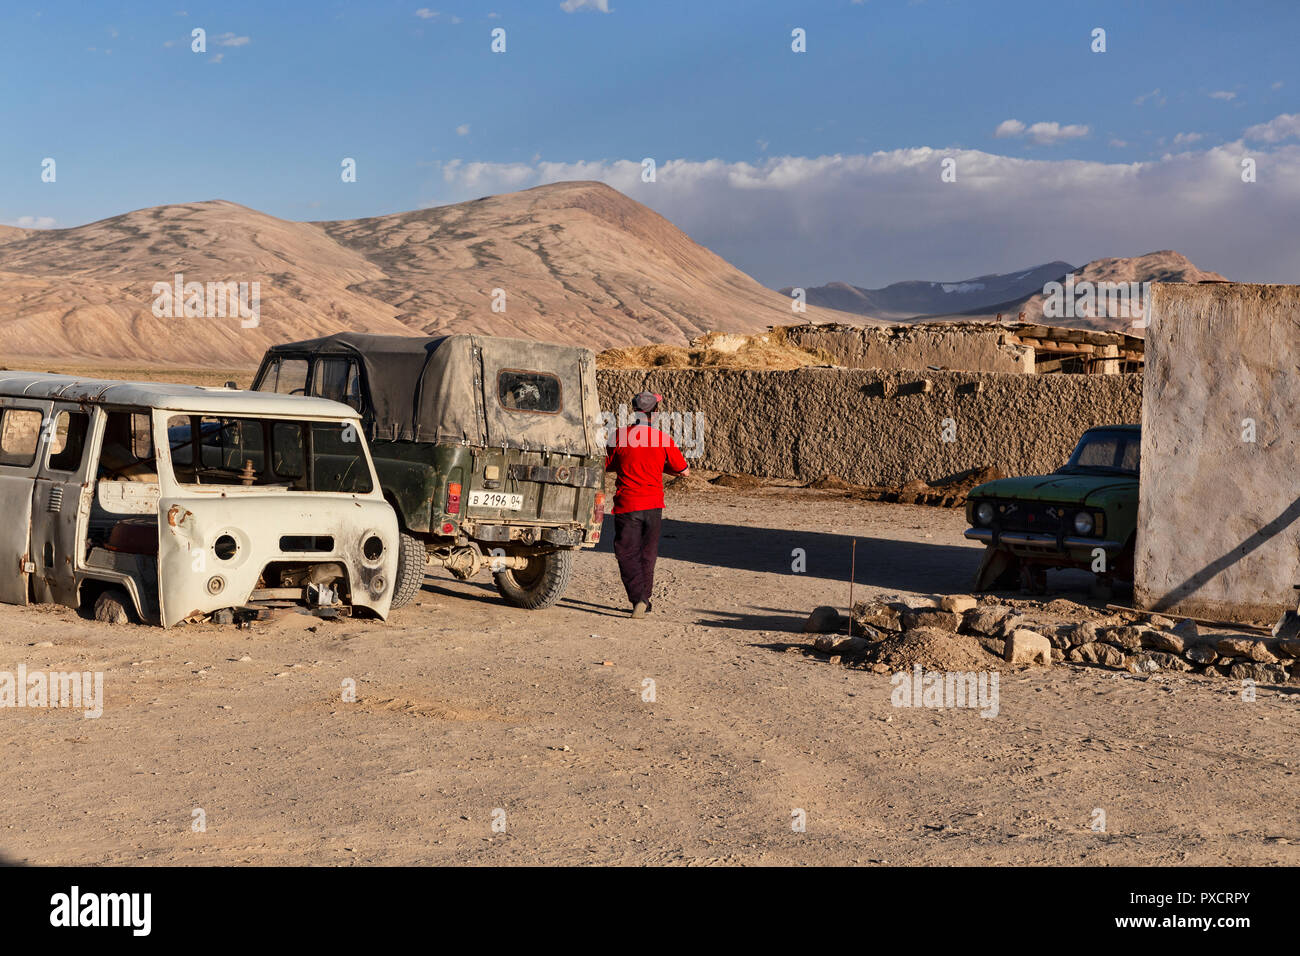 Dorfbewohner im Hellen shirt Spaziergänge im Dorf, Bulunkul Bulunkul, Pamir Highway, Pamir, Tadschikistan Stockfoto